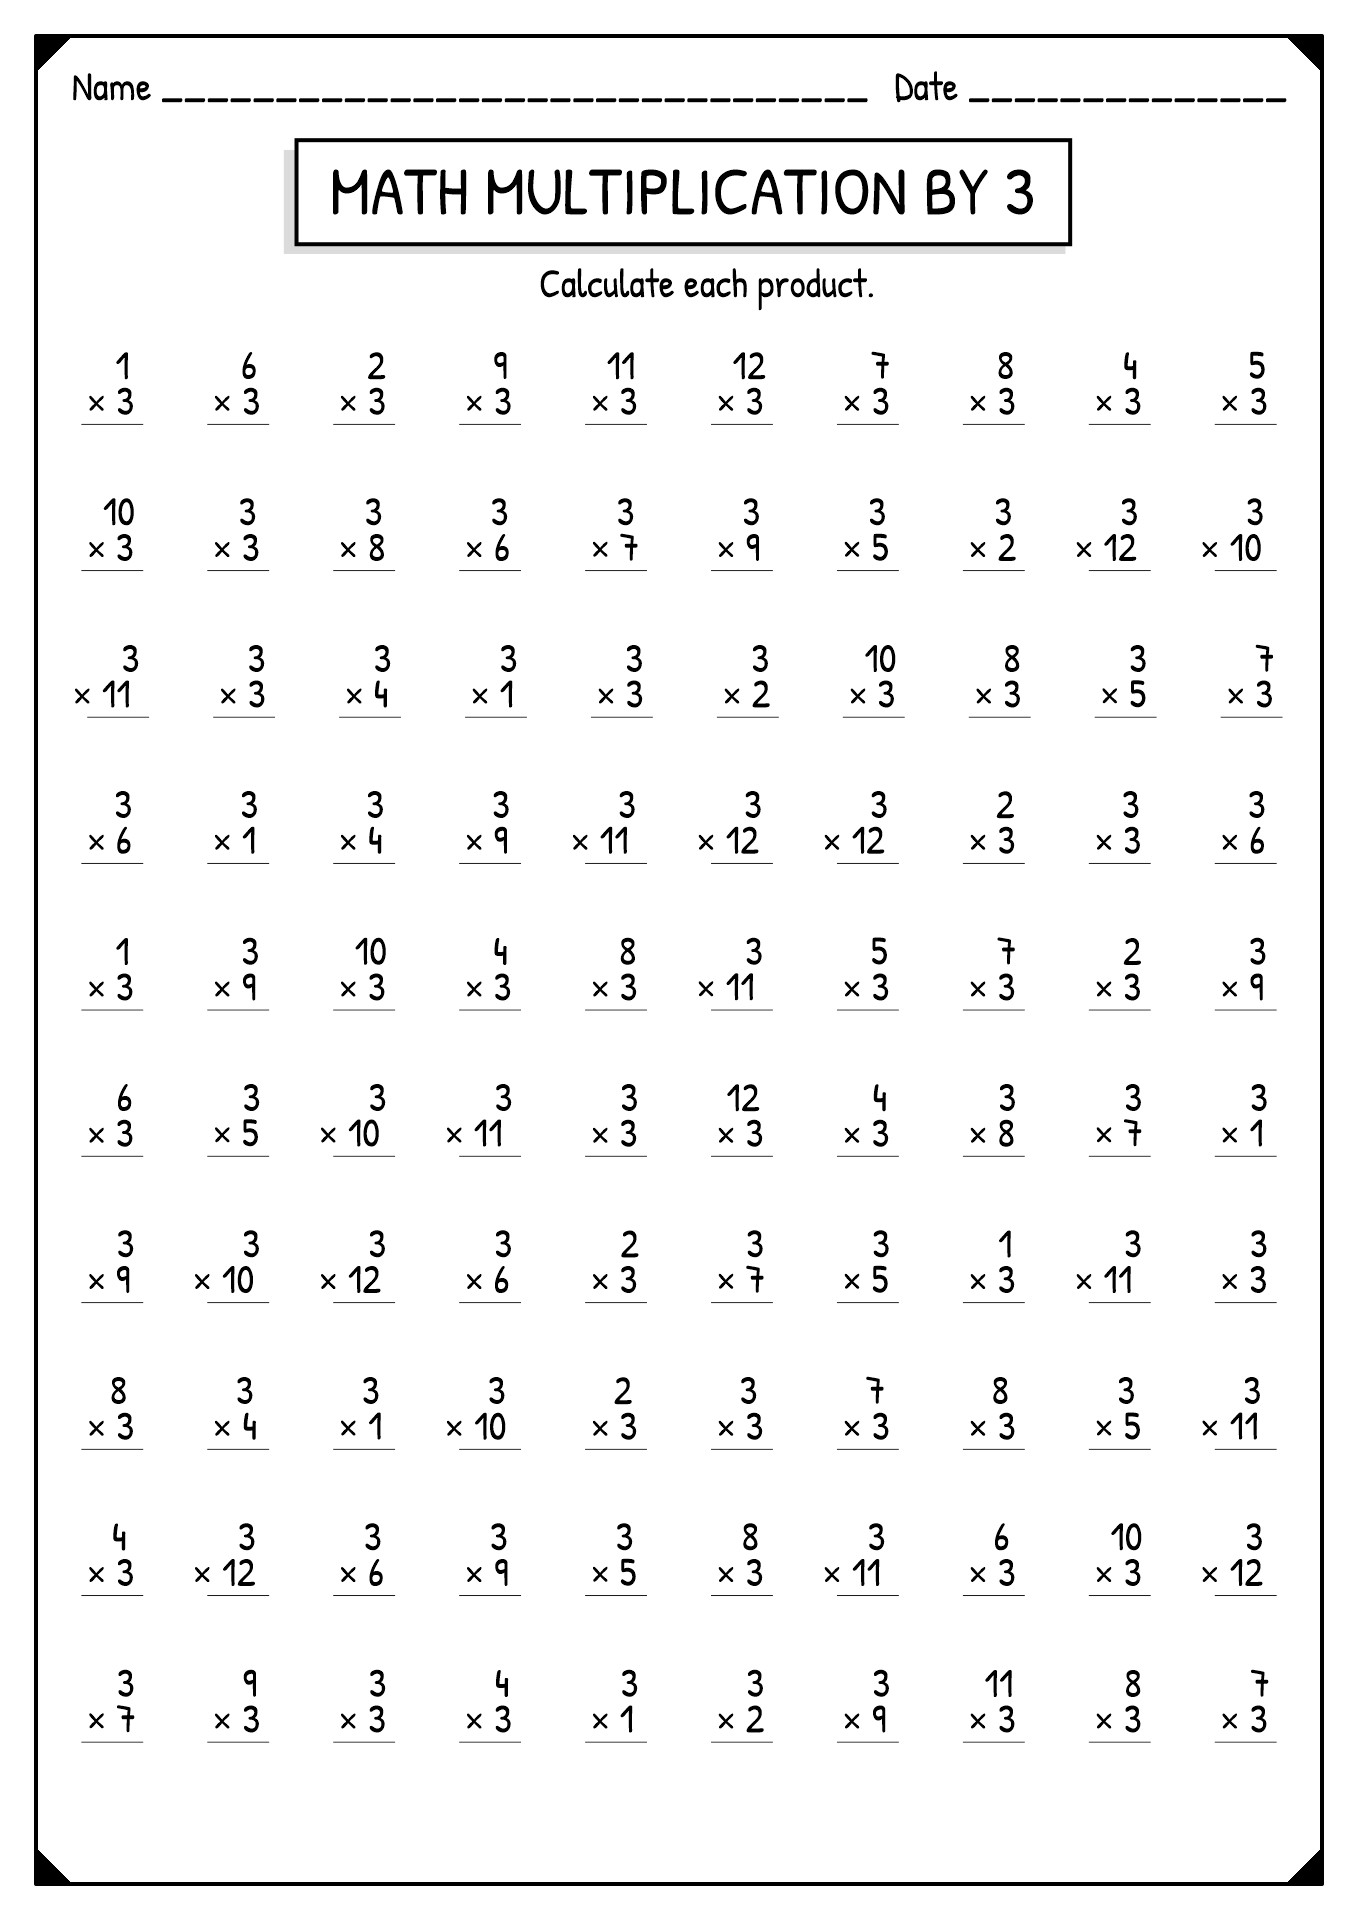 11 Best Images of Multiplication Worksheets 4S - 1 Multiplication